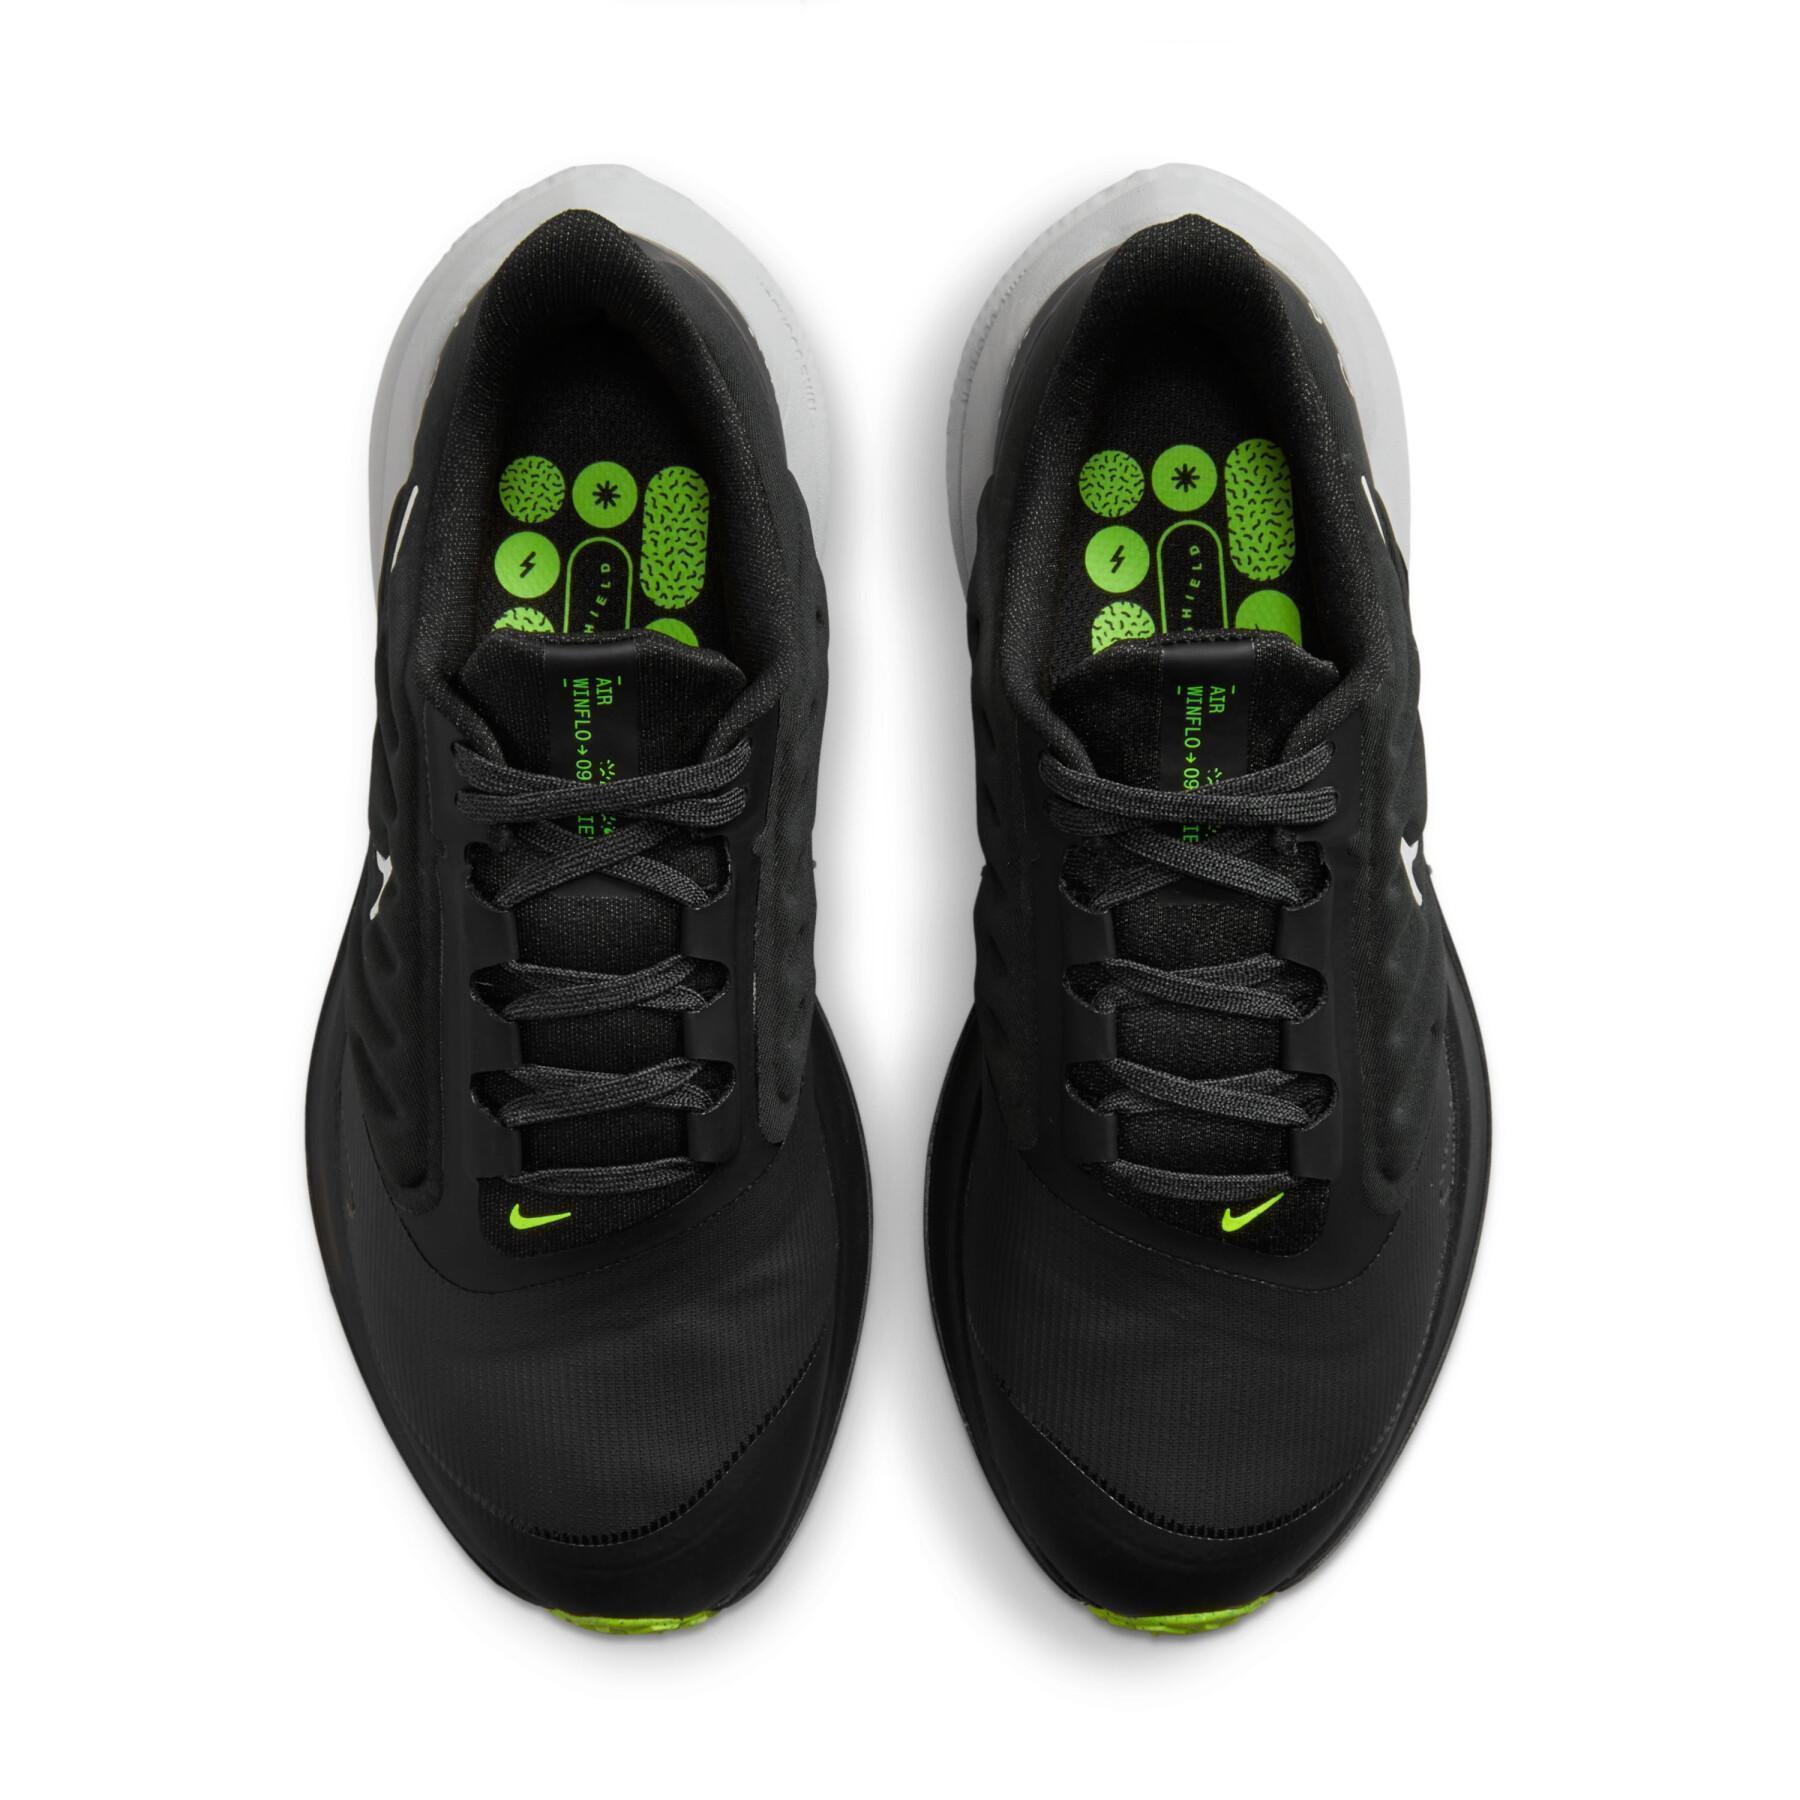 Women's running shoes Nike Air Winflo 9 Shield